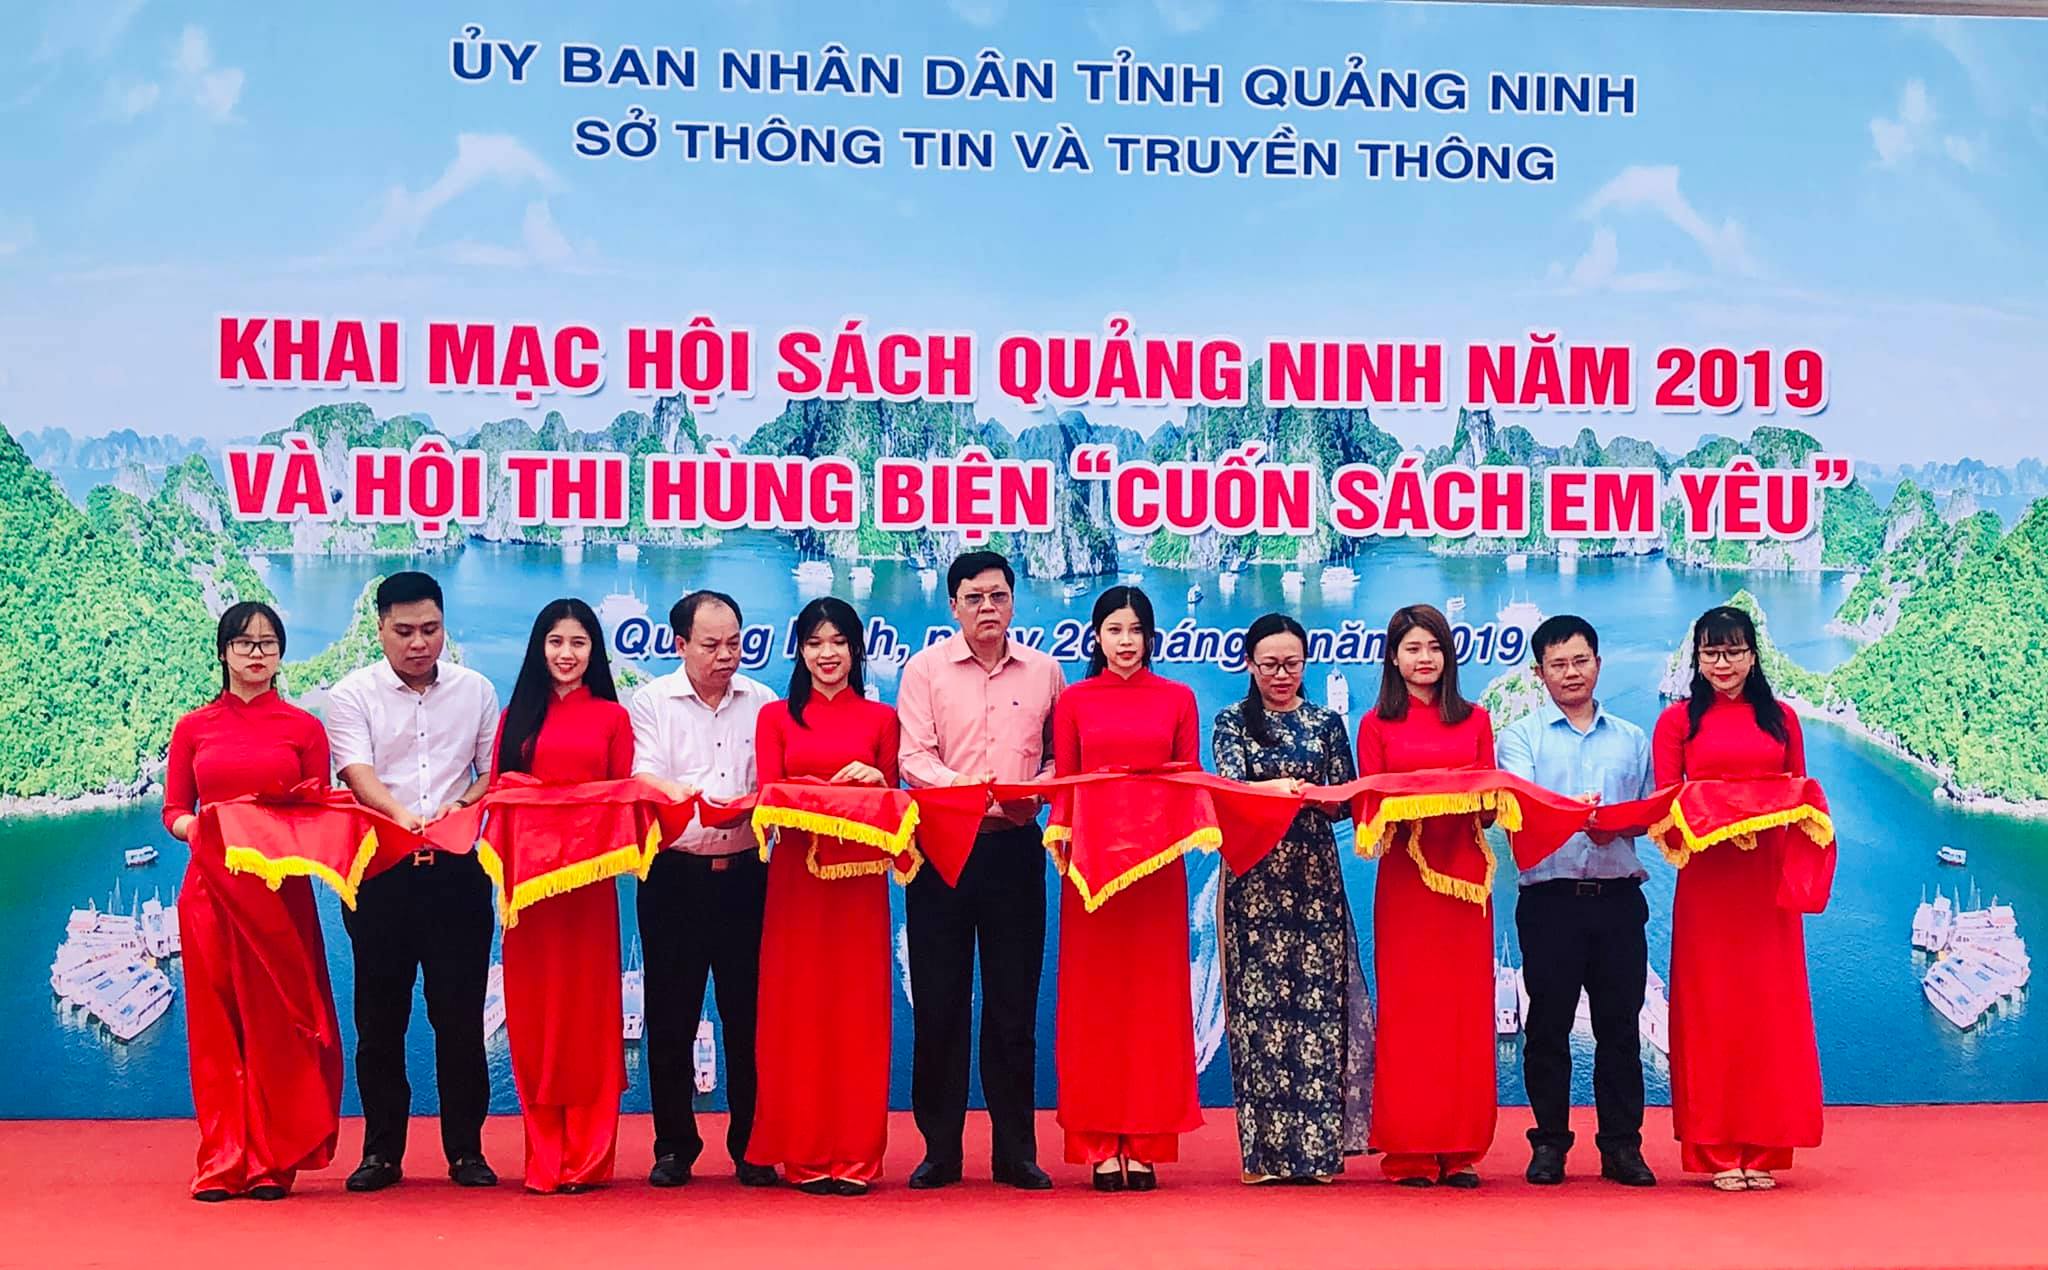 Cắt băng khai mạc Hội sách tỉnh Quảng Ninh 2019.